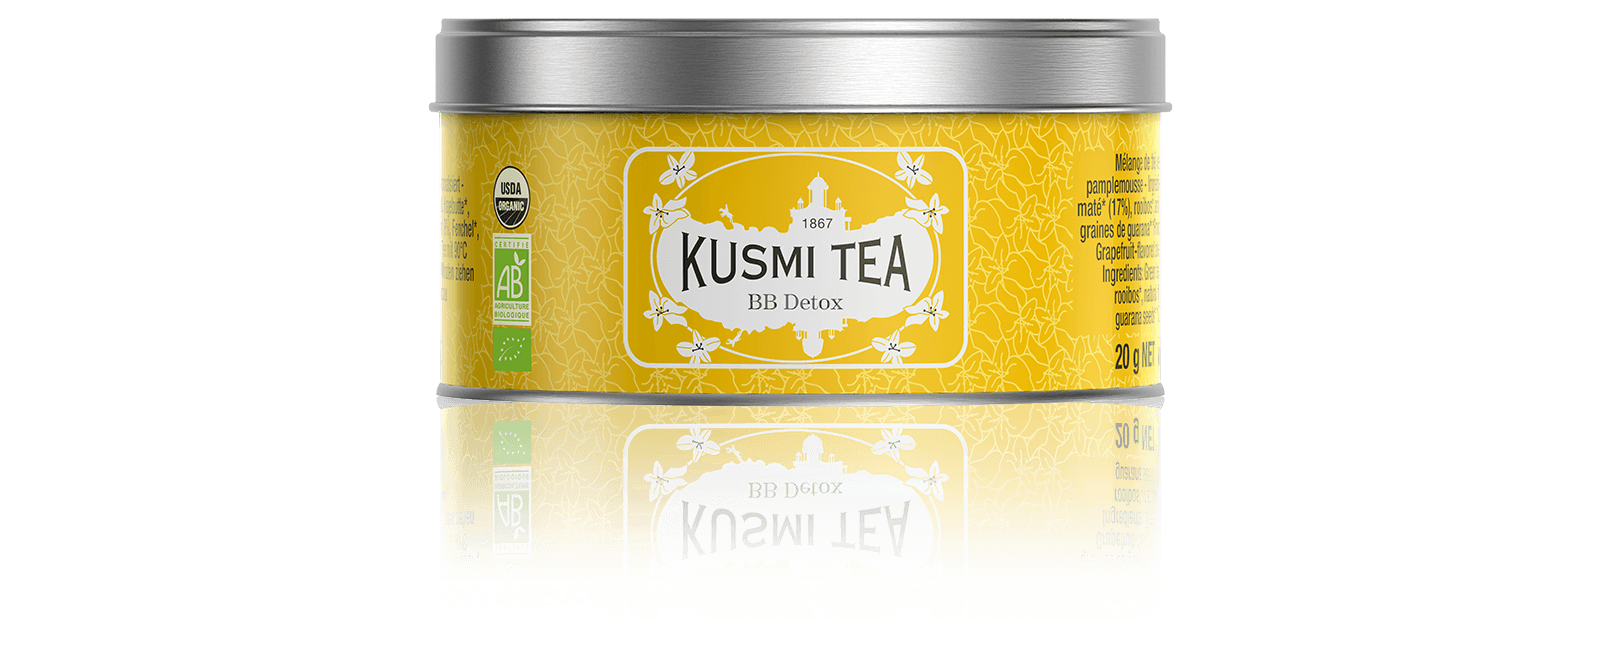 BB Detox bio - Mélange de thé vert, maté et plantes aromatisé pamplemousse - Boite à thé en vrac - Kusmi Tea